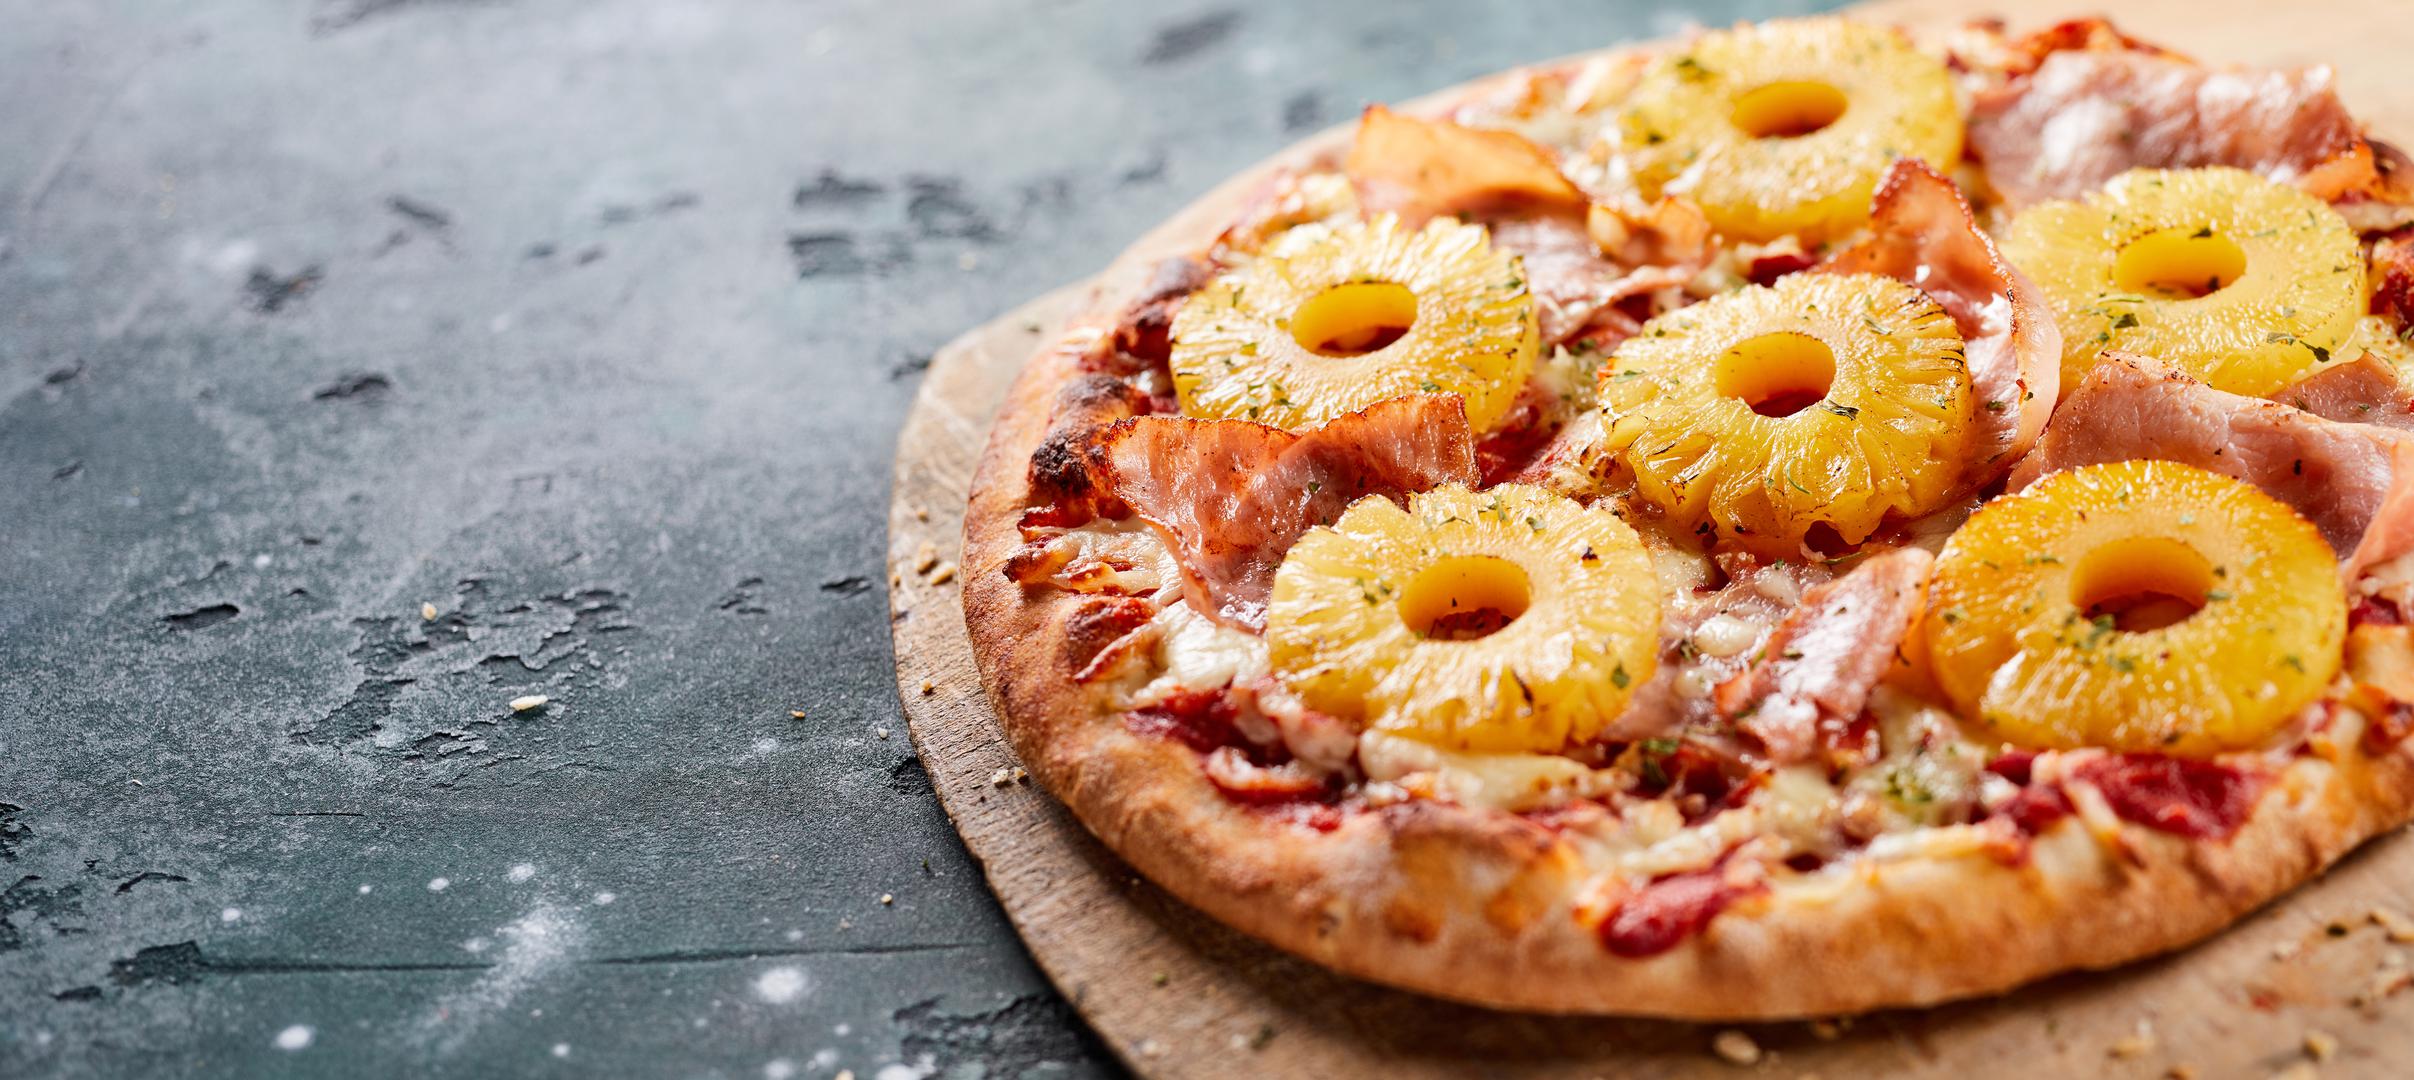 Pizze s neobičnim dodacima: "Neke pizze postale su previše, stoga preporučujem da se držite jednostavnih sastojaka”, rekao je Giuseppe Gaeta, izvršni kuhar u Ciprianiju u Las Vegasu. Specifičan dodatak za pizzu koji talijanski kuhari ne vole je ananas. "Ananas ne ide na pizzu. To je voće koje se ne slaže s talijanskim okusima. Prejak je i finiš će prekriti većinu delikatnih okusa ostalih sastojaka,” rekao je Matteo Venini, glavni kuhar i suvlasnik pizzerije Stellina u Washingtonu, D.C. On nije u potpunosti protiv voća na pizzi; Venini kaže da u Stellini poslužuju pizze sa smokvama ili kruškama, koje imaju uravnoteženiji profil okusa, ali ne i ananas. "Ne bih naručio ananas na pizzi u drugom restoranu iz istih razloga kao gore — presladak je i nadjačava druge okuse", dodaje.